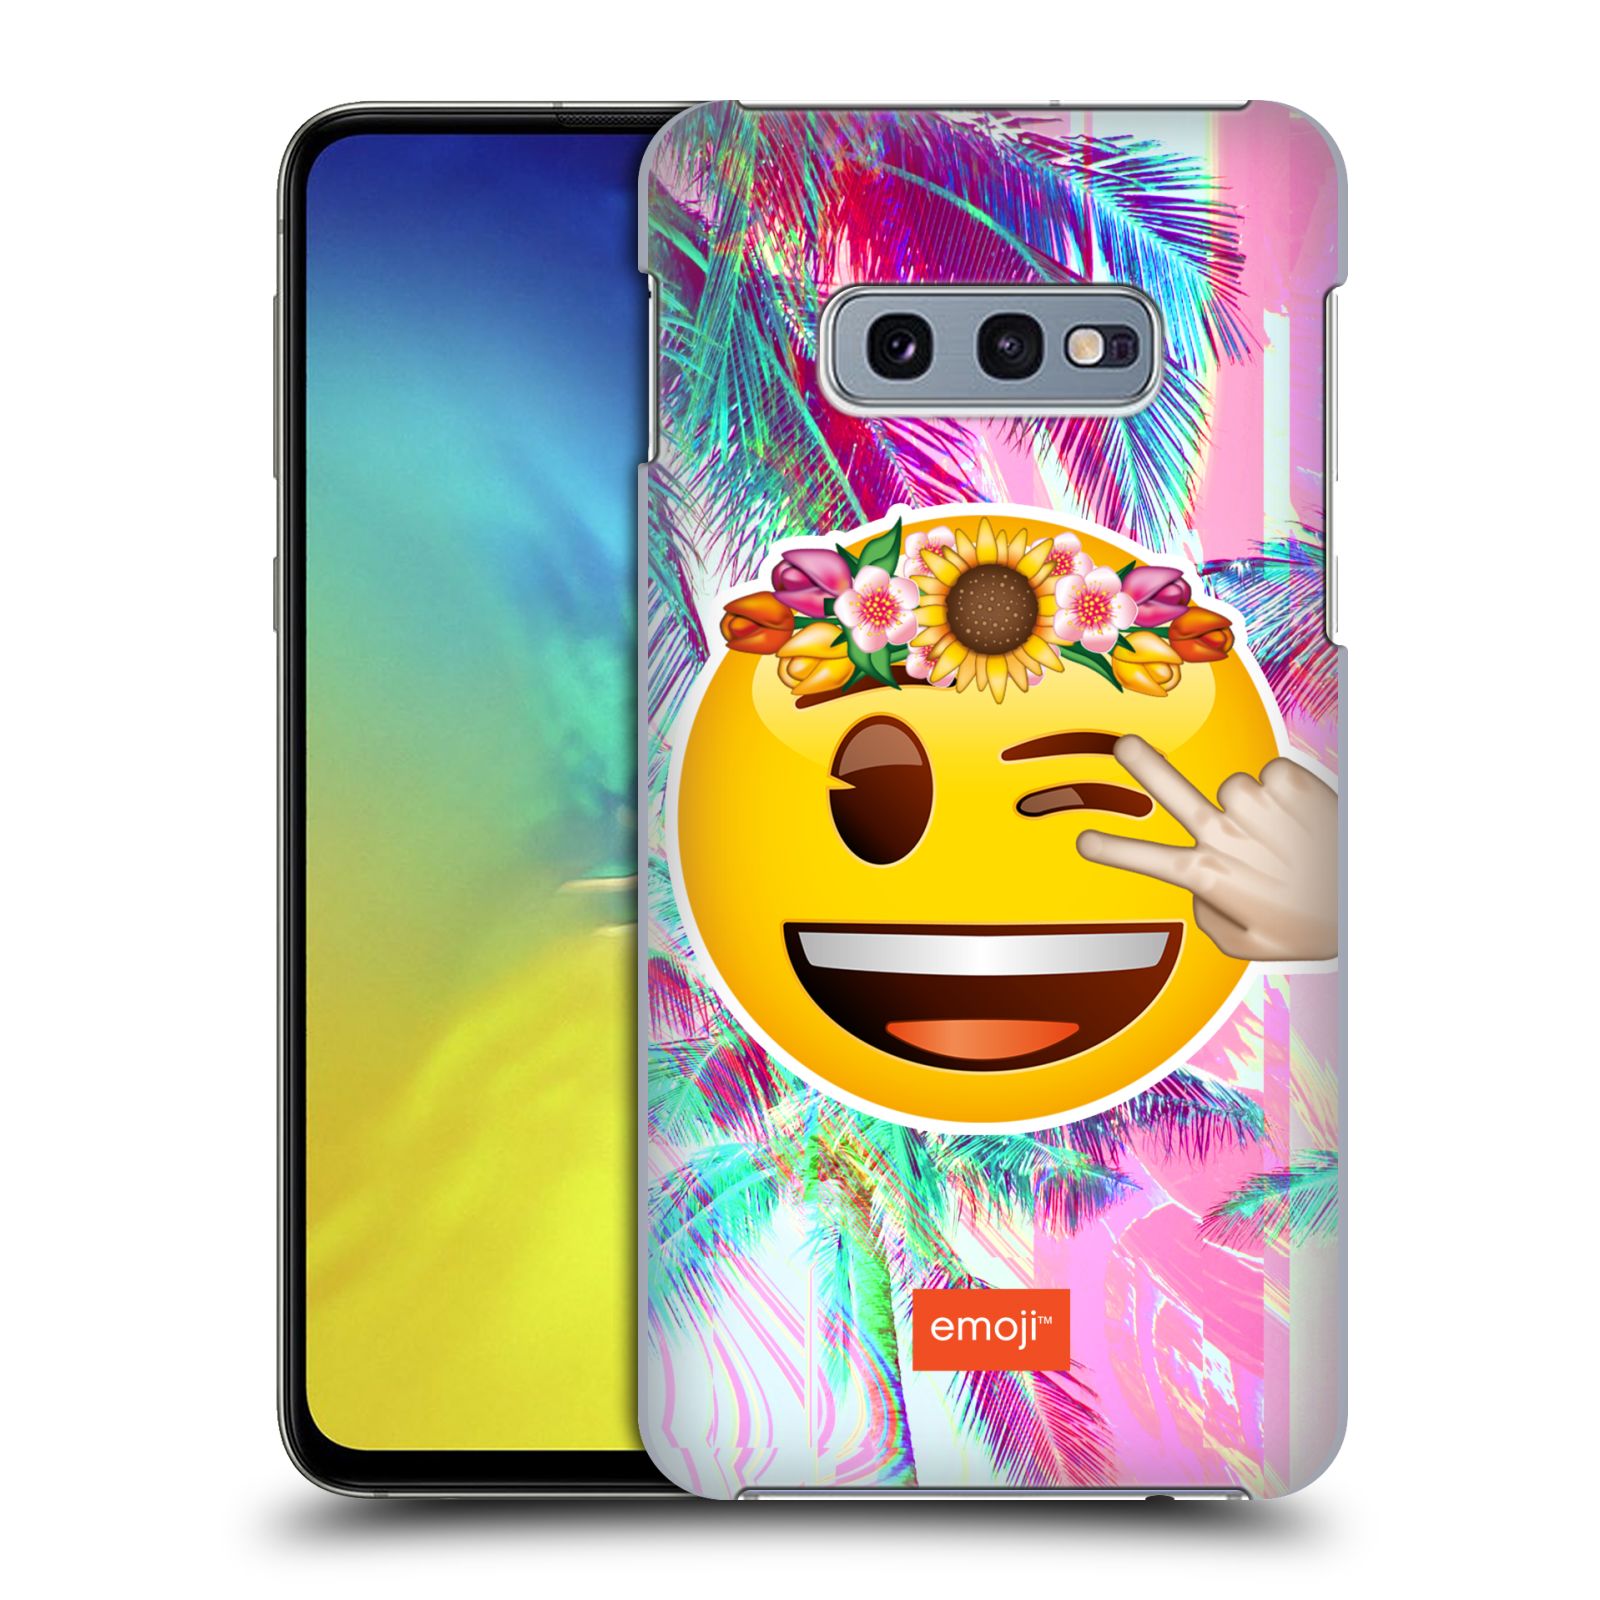 Pouzdro na mobil Samsung Galaxy S10e - HEAD CASE - Emoji smajlík palmy a květiny